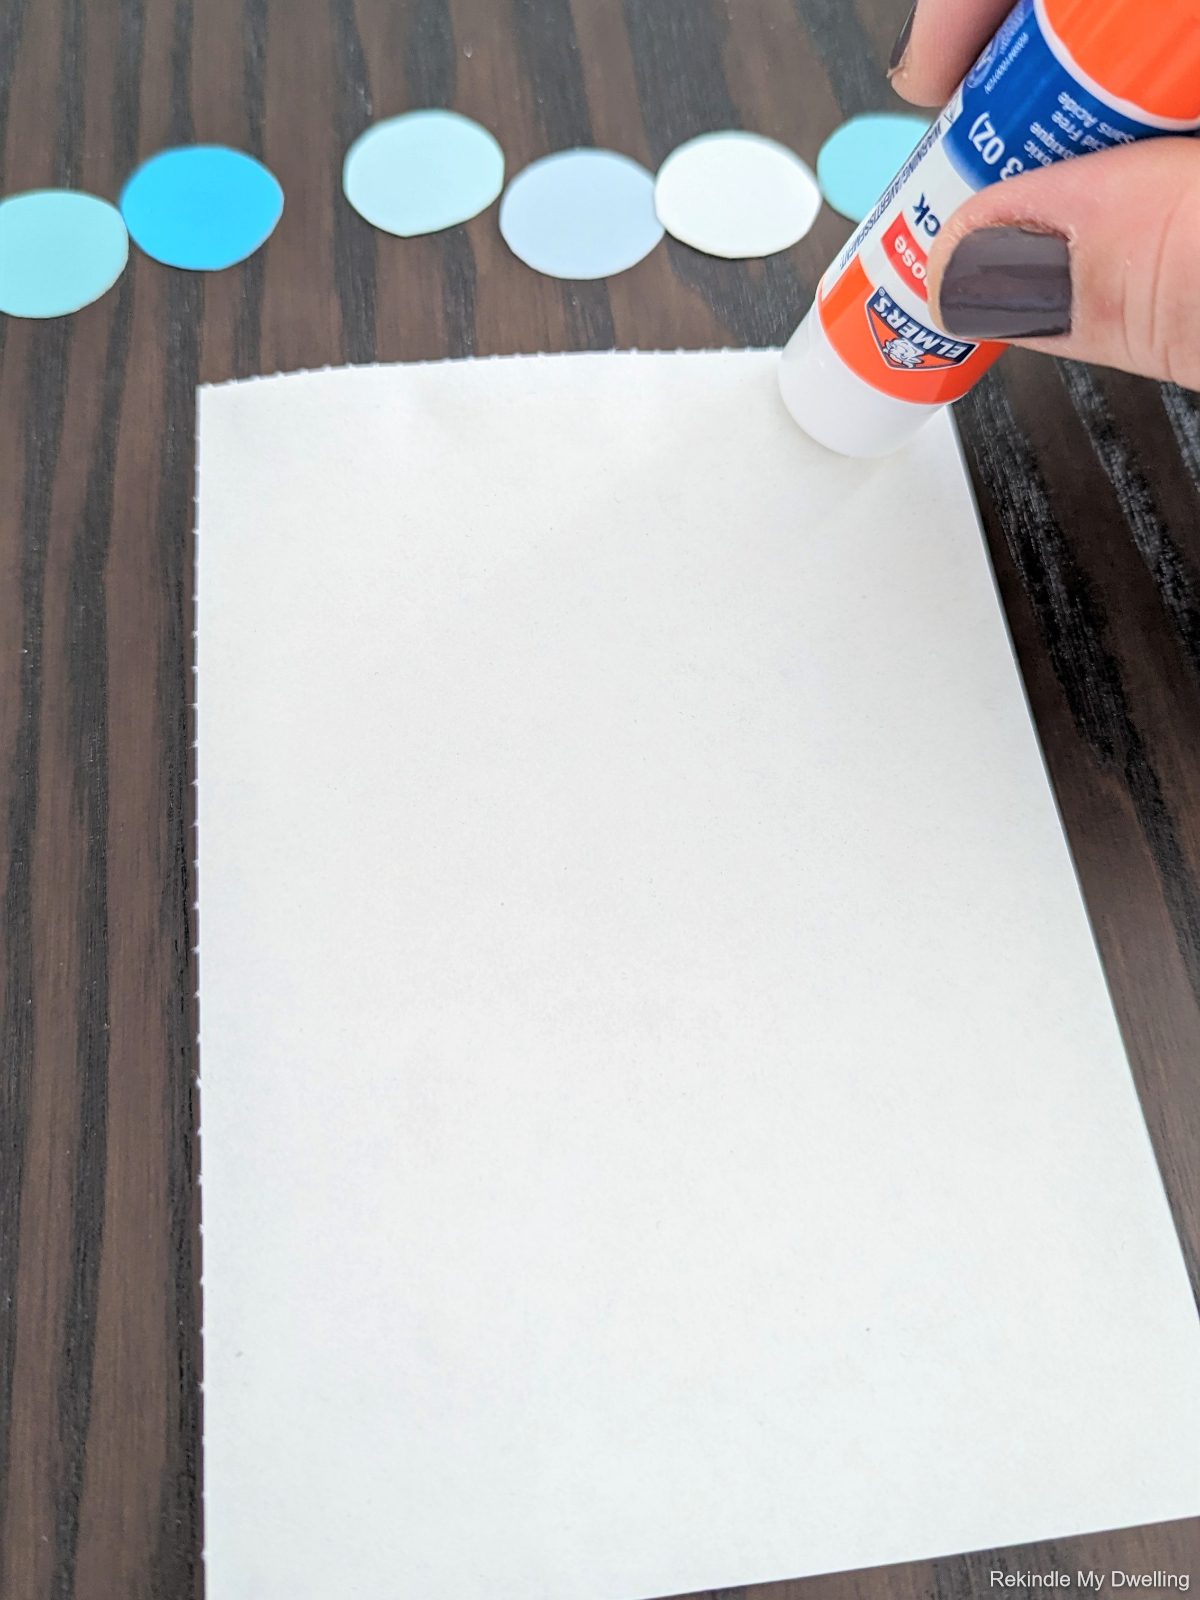 Adding glue onto a paper.